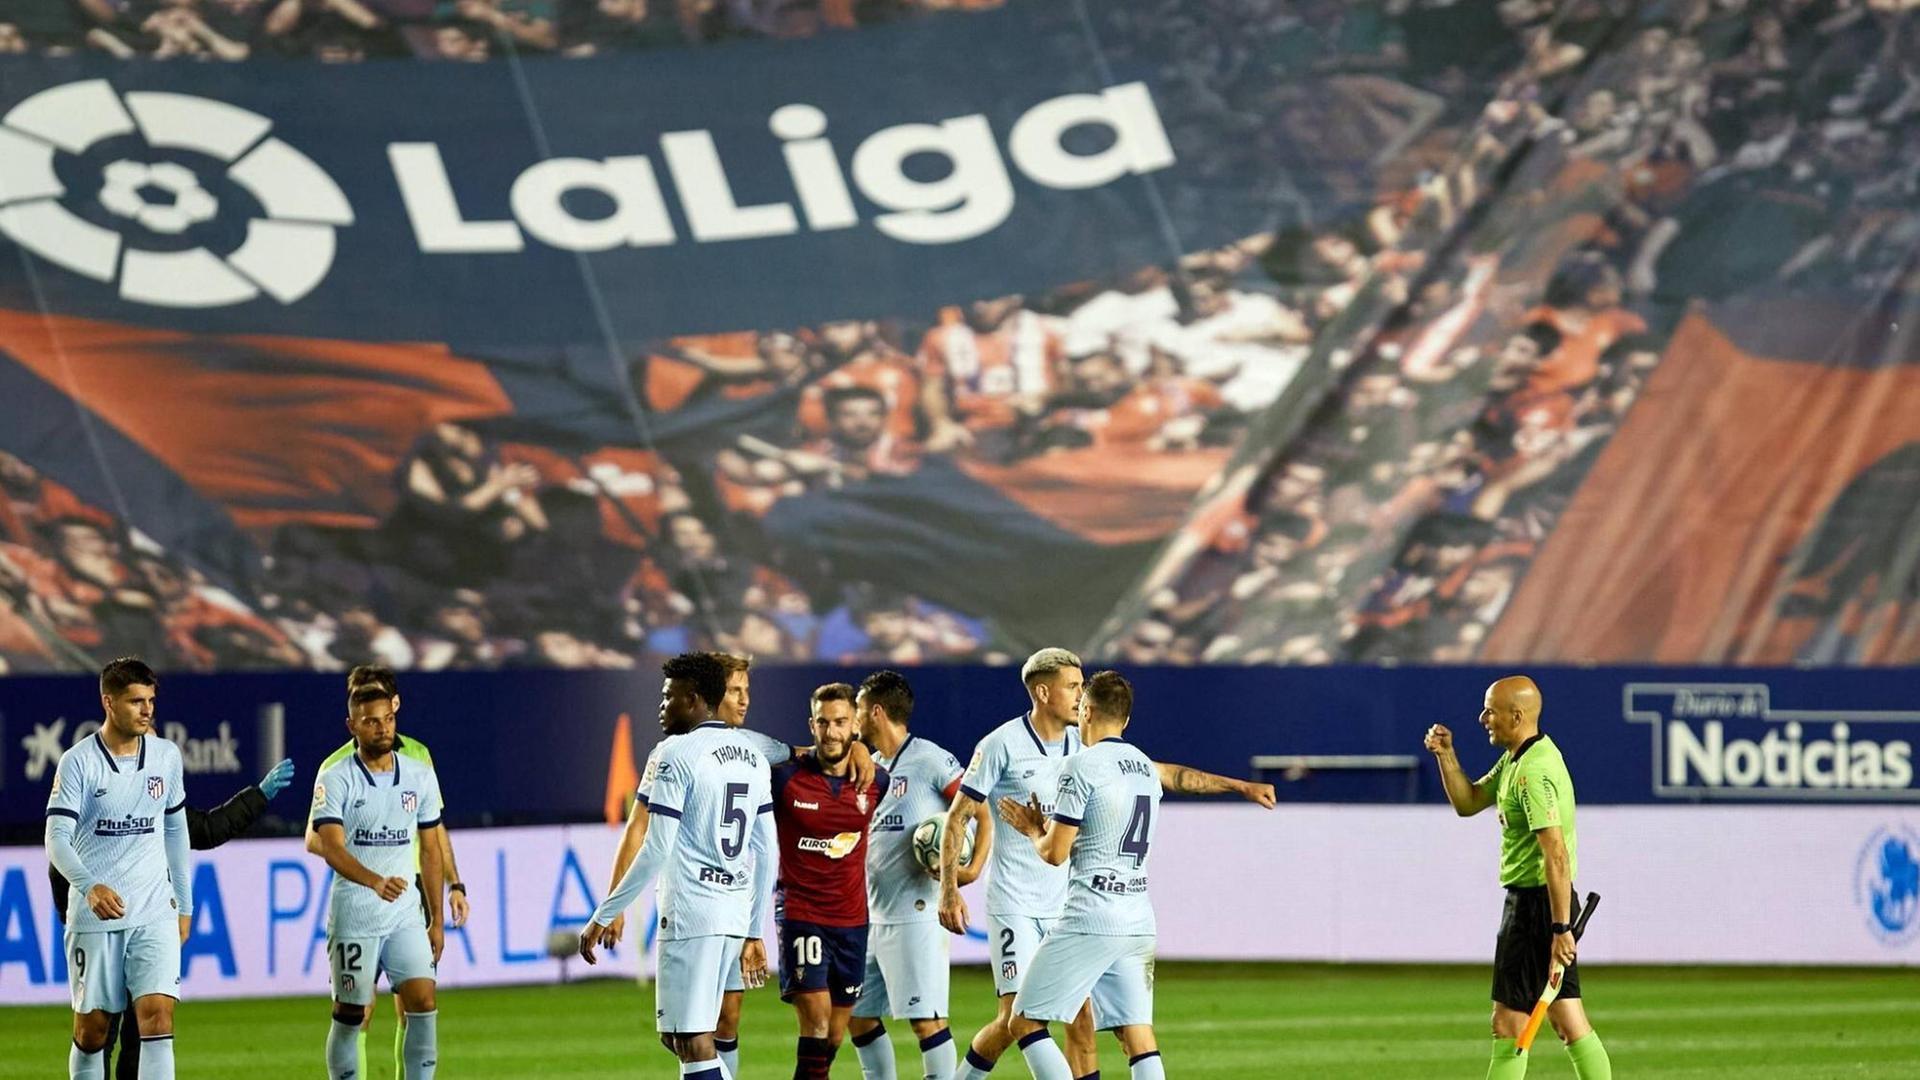 Animierte Zuschauerränge bei der Fernsehübertragung des "La Liga"-Spiels Osasuna vs Atletico de Madrid im El Sadar Stadion in Pamplona am 17. Juni 2020